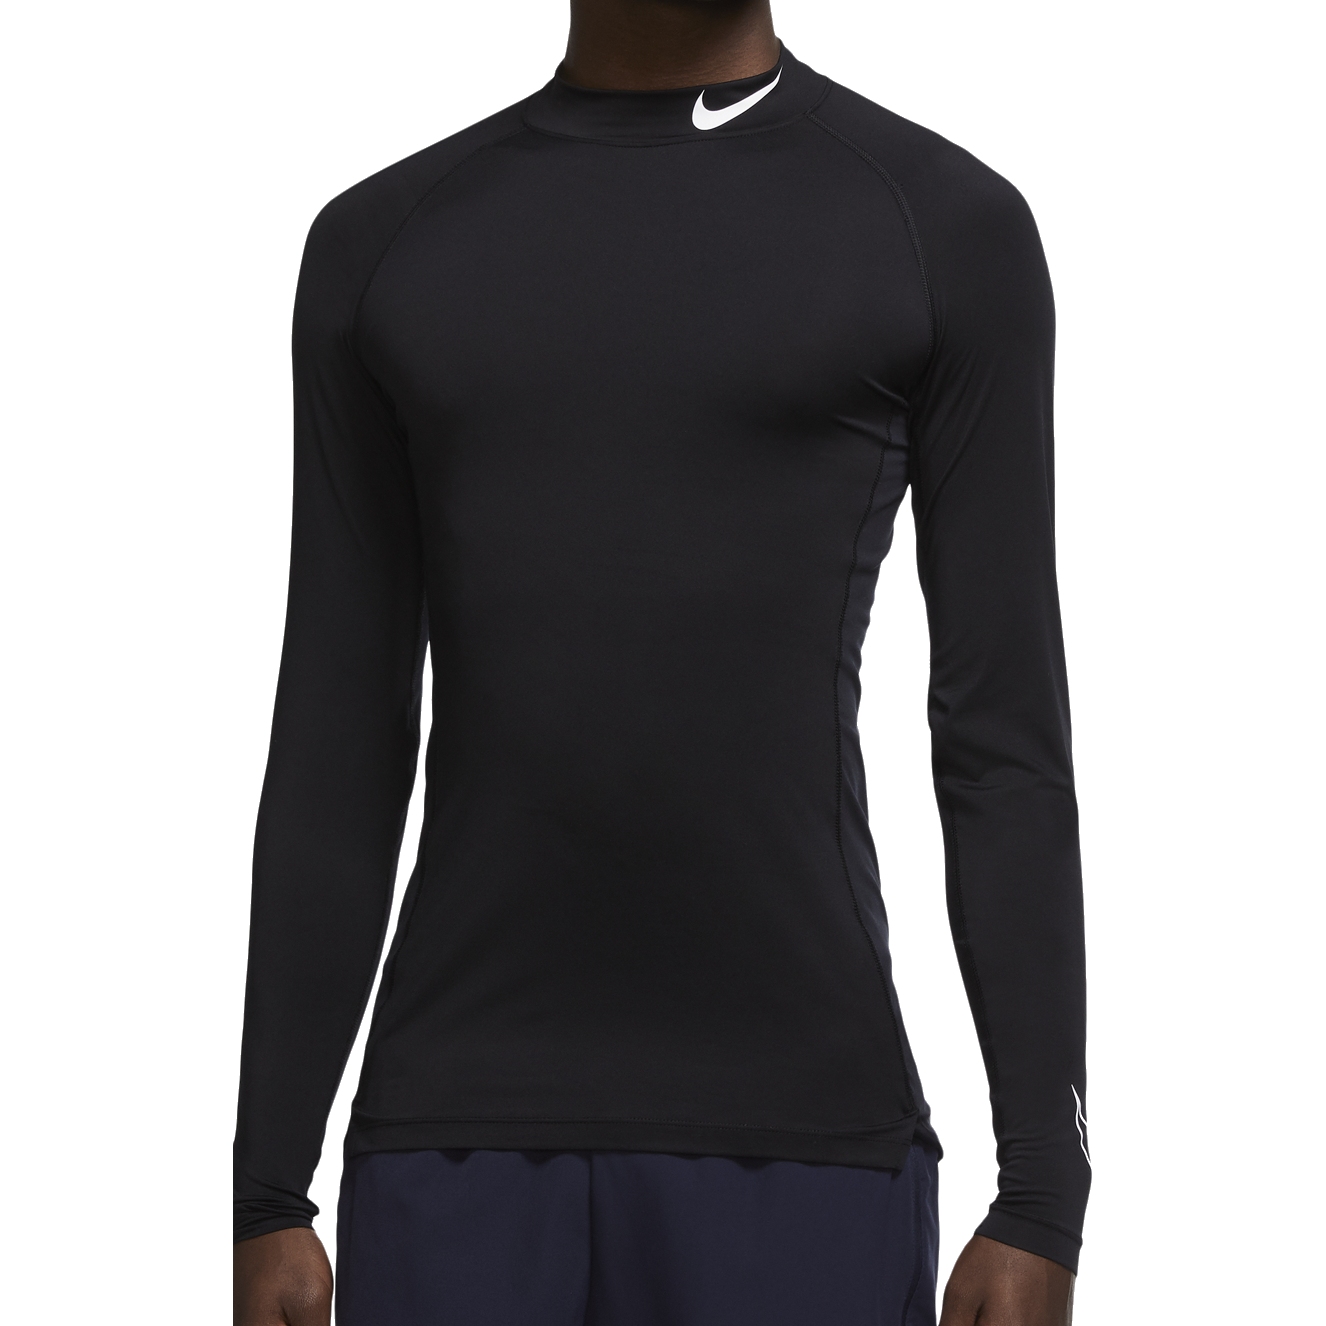 Produktbild von Nike Pro Dri-Fit Herren Tight Fit Langarmshirt - black/white DD1986-010